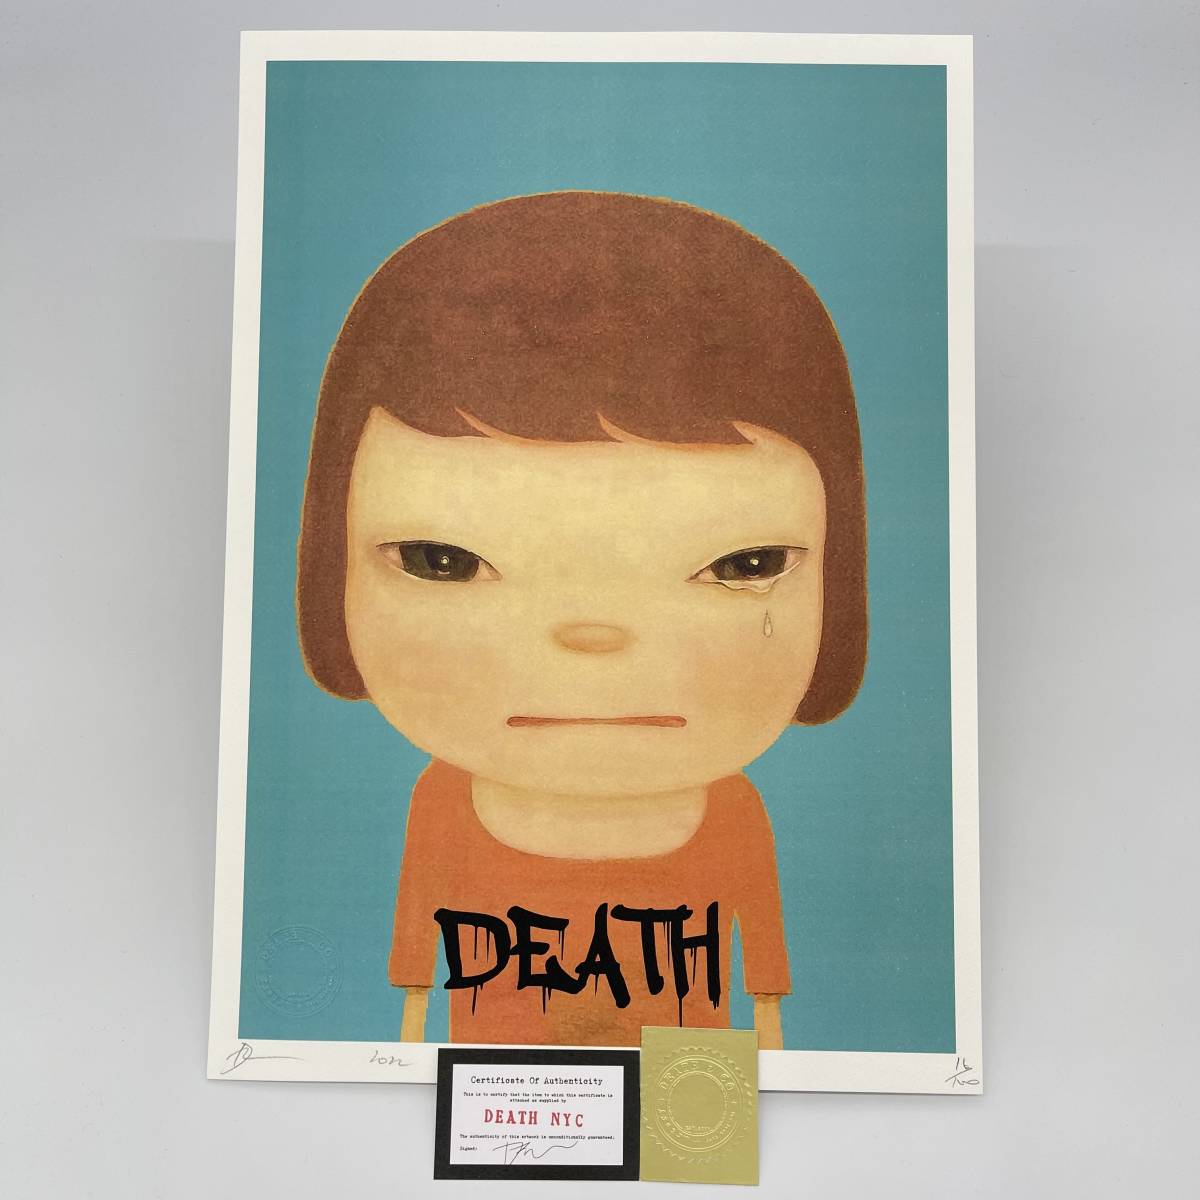 DEATH NYC 世界限定100枚 アートポスター 奈良美智 YOSHITOMO NARA ロッタちゃん Banksy バンクシー Kaws カウズ  現代アート ポップアート